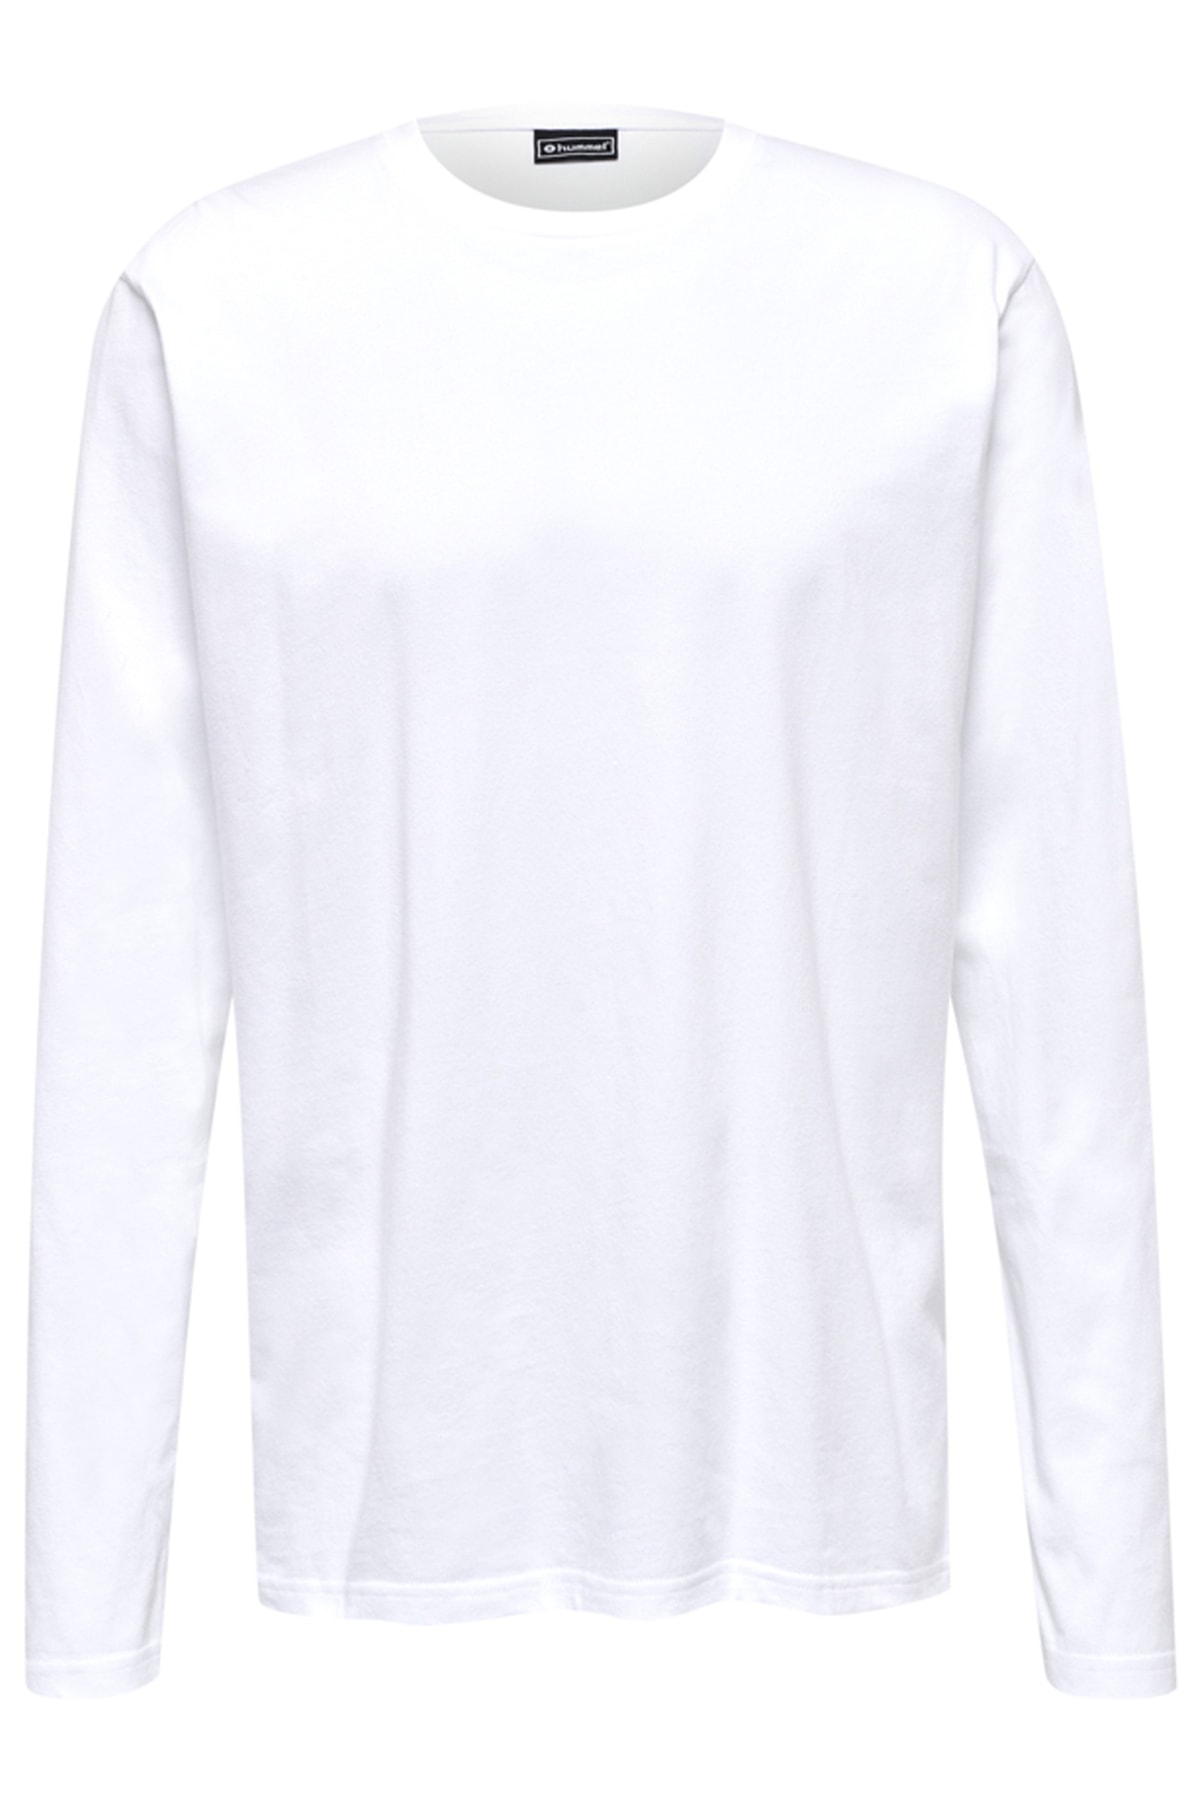 HUMMEL T-Shirt Weiß Regular Fit